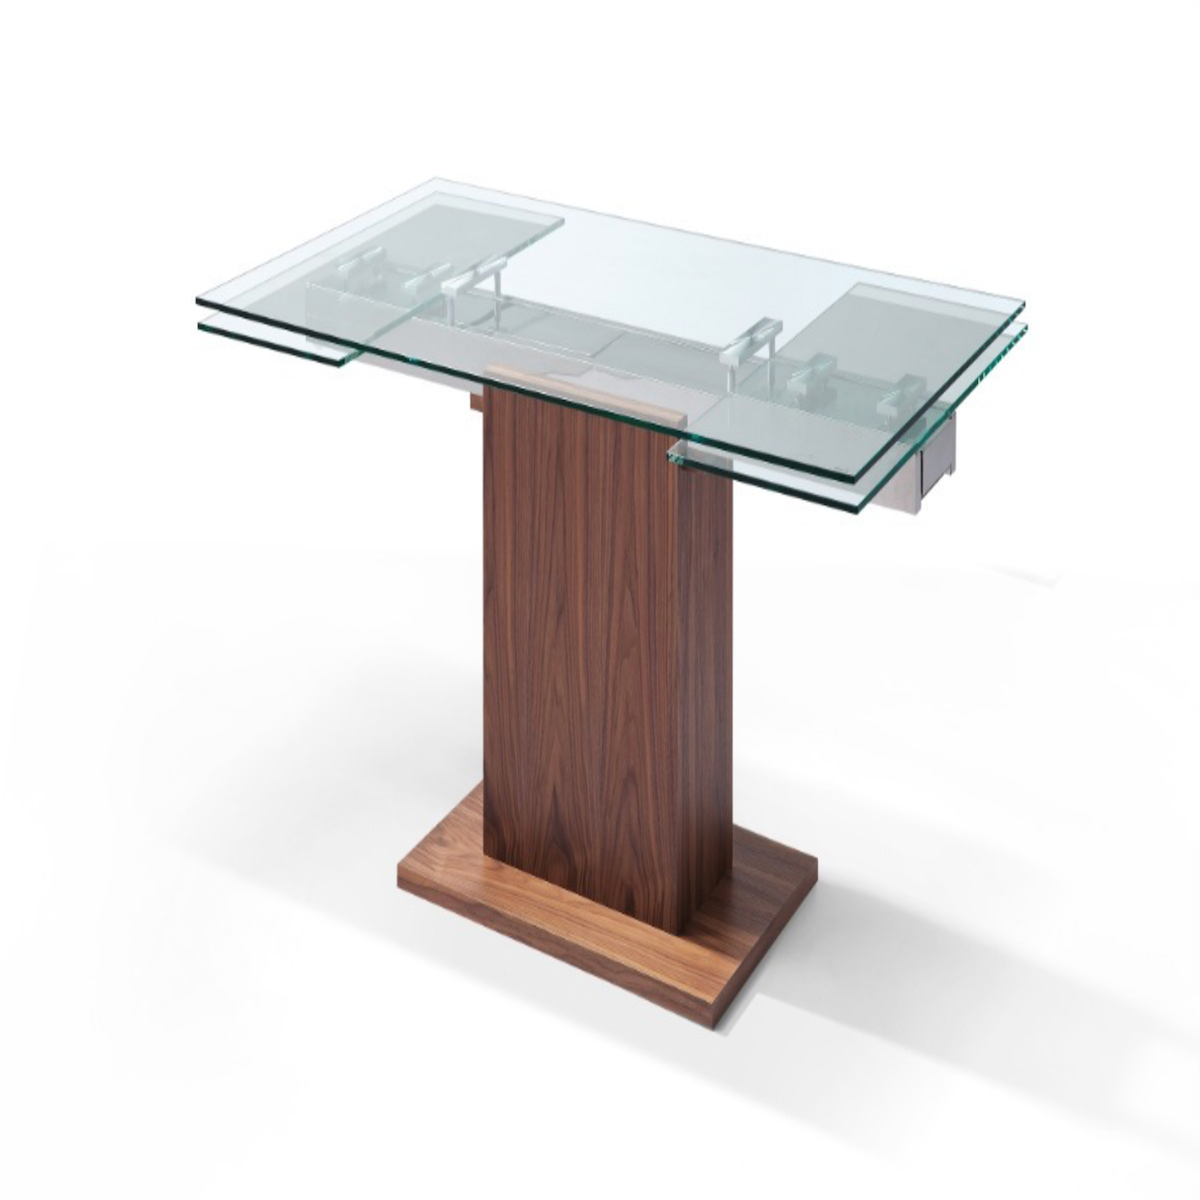 Whiteline Modern Living Pilastro Extendable Dining Table DT1275-WLT